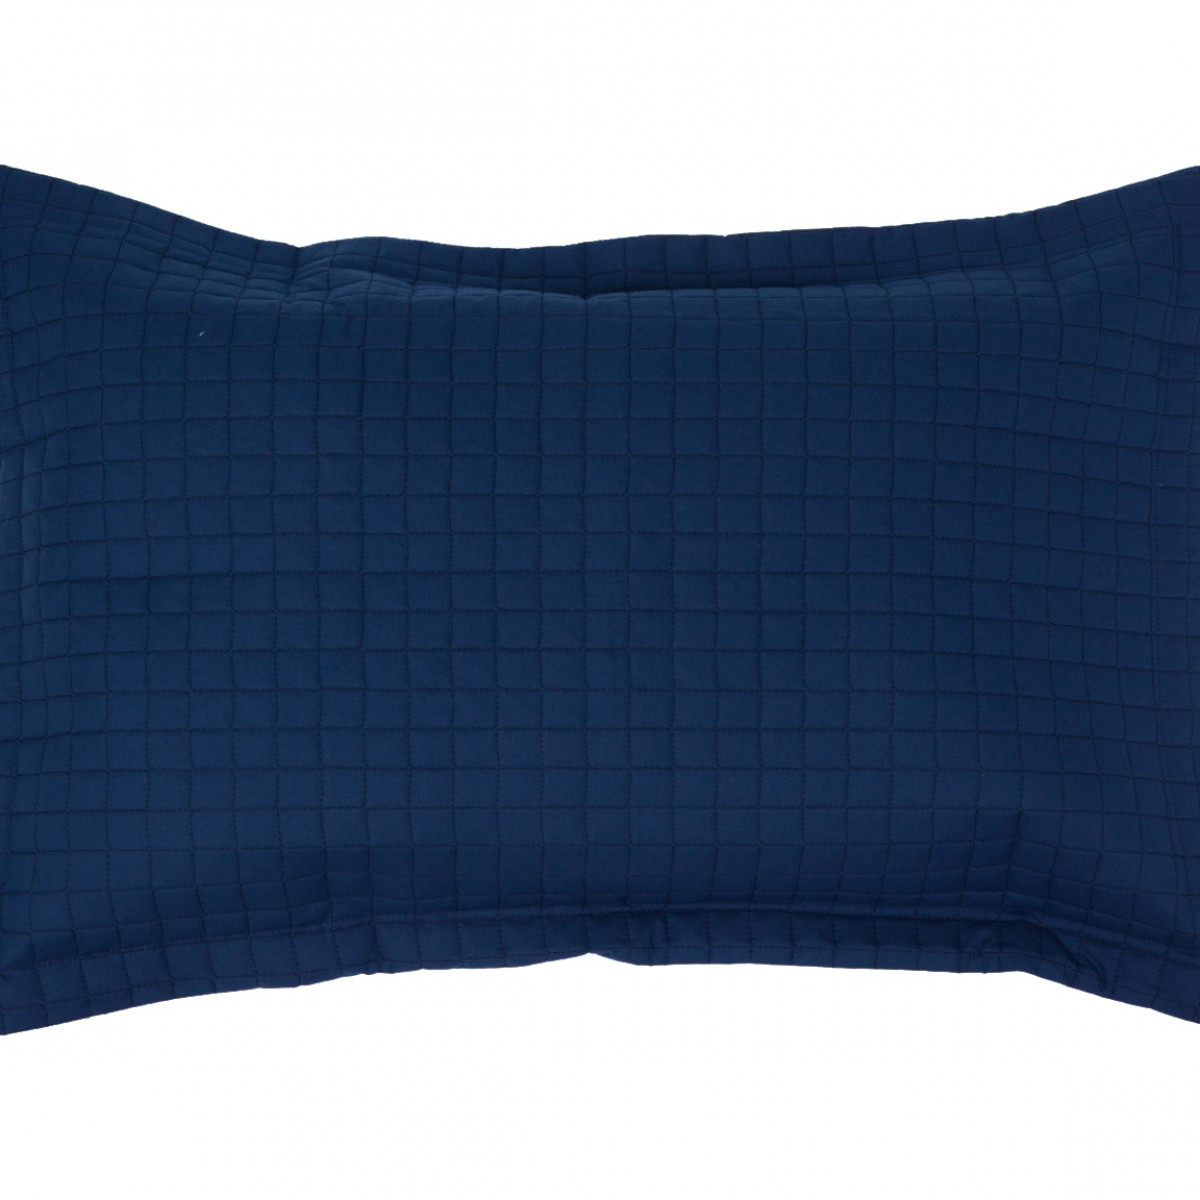 Prátic Porta Travesseiro Avulso Decorativo - 70cm x 50cm + Abas - Percal 200 Fios - 100% Algodão - 1 Peça - Azul Marinho